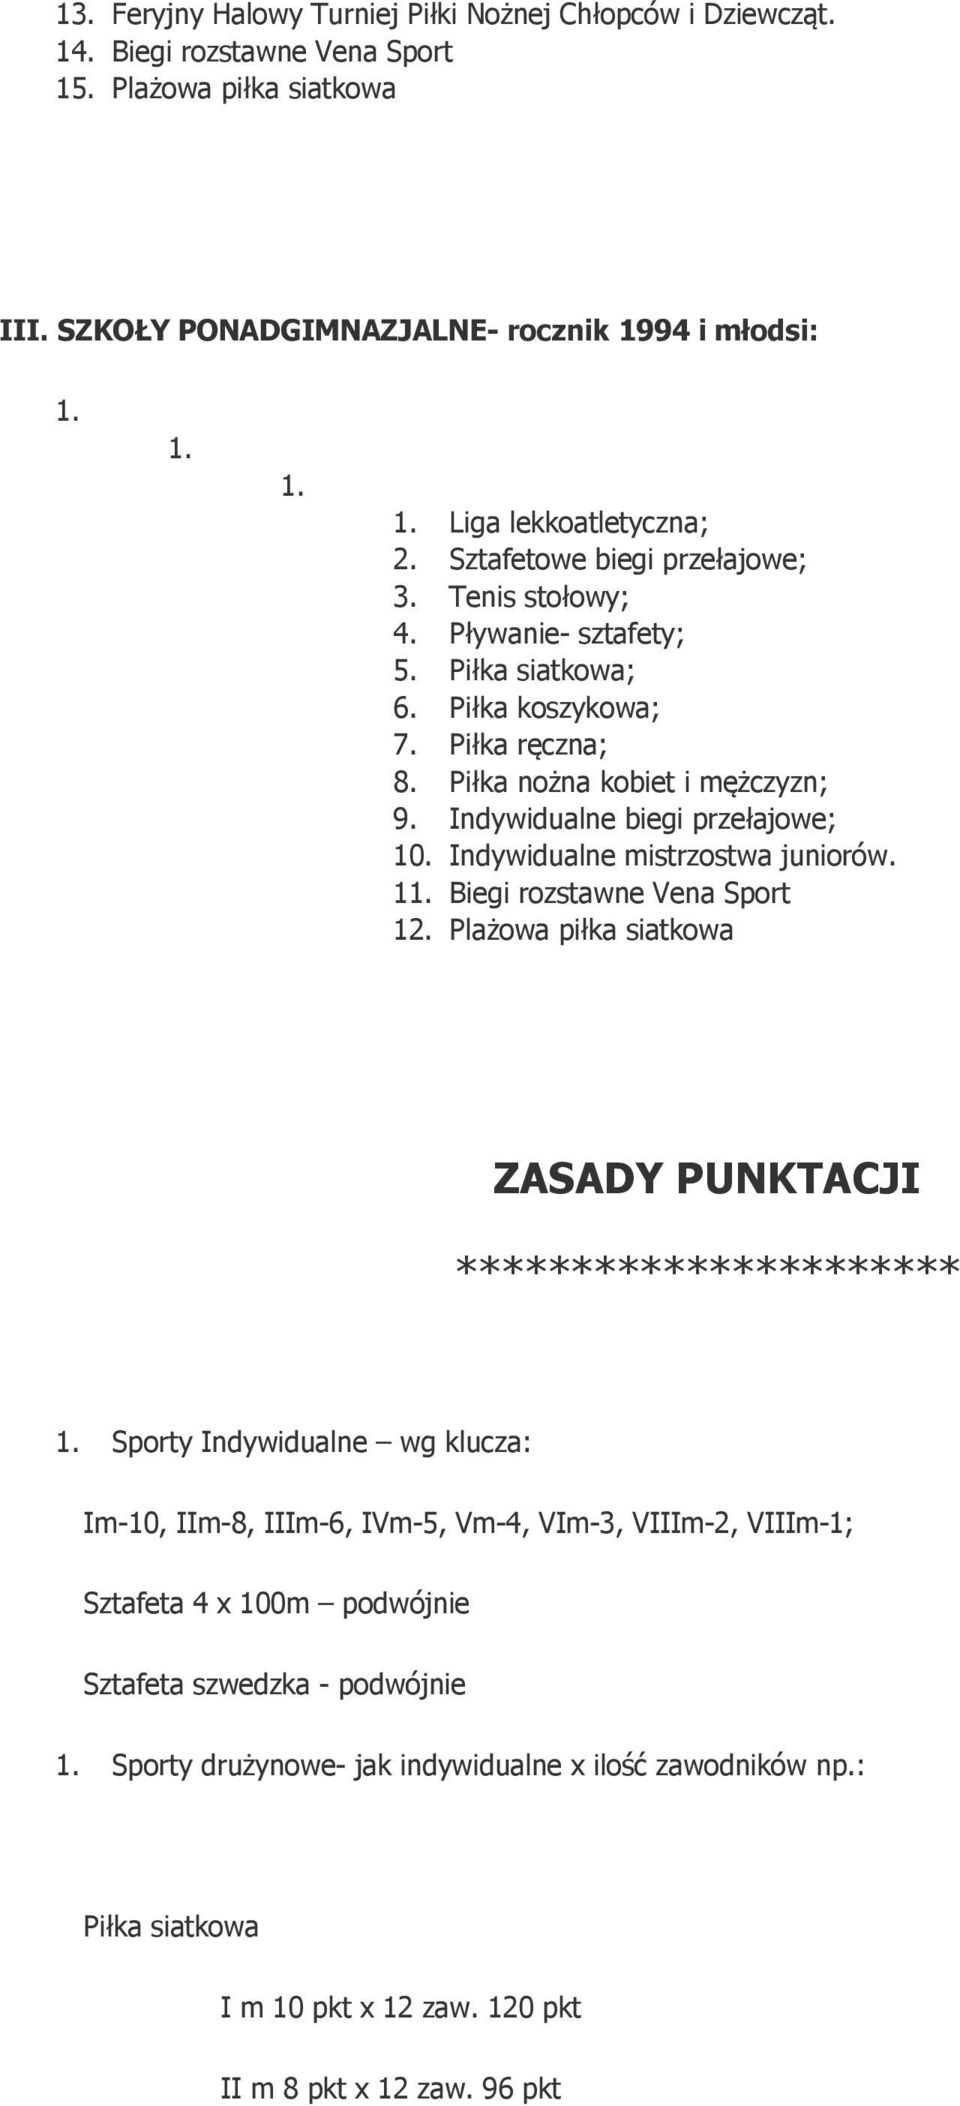 Indywidualne mistrzostwa juniorów. 1 Biegi rozstawne Vena Sport 12.